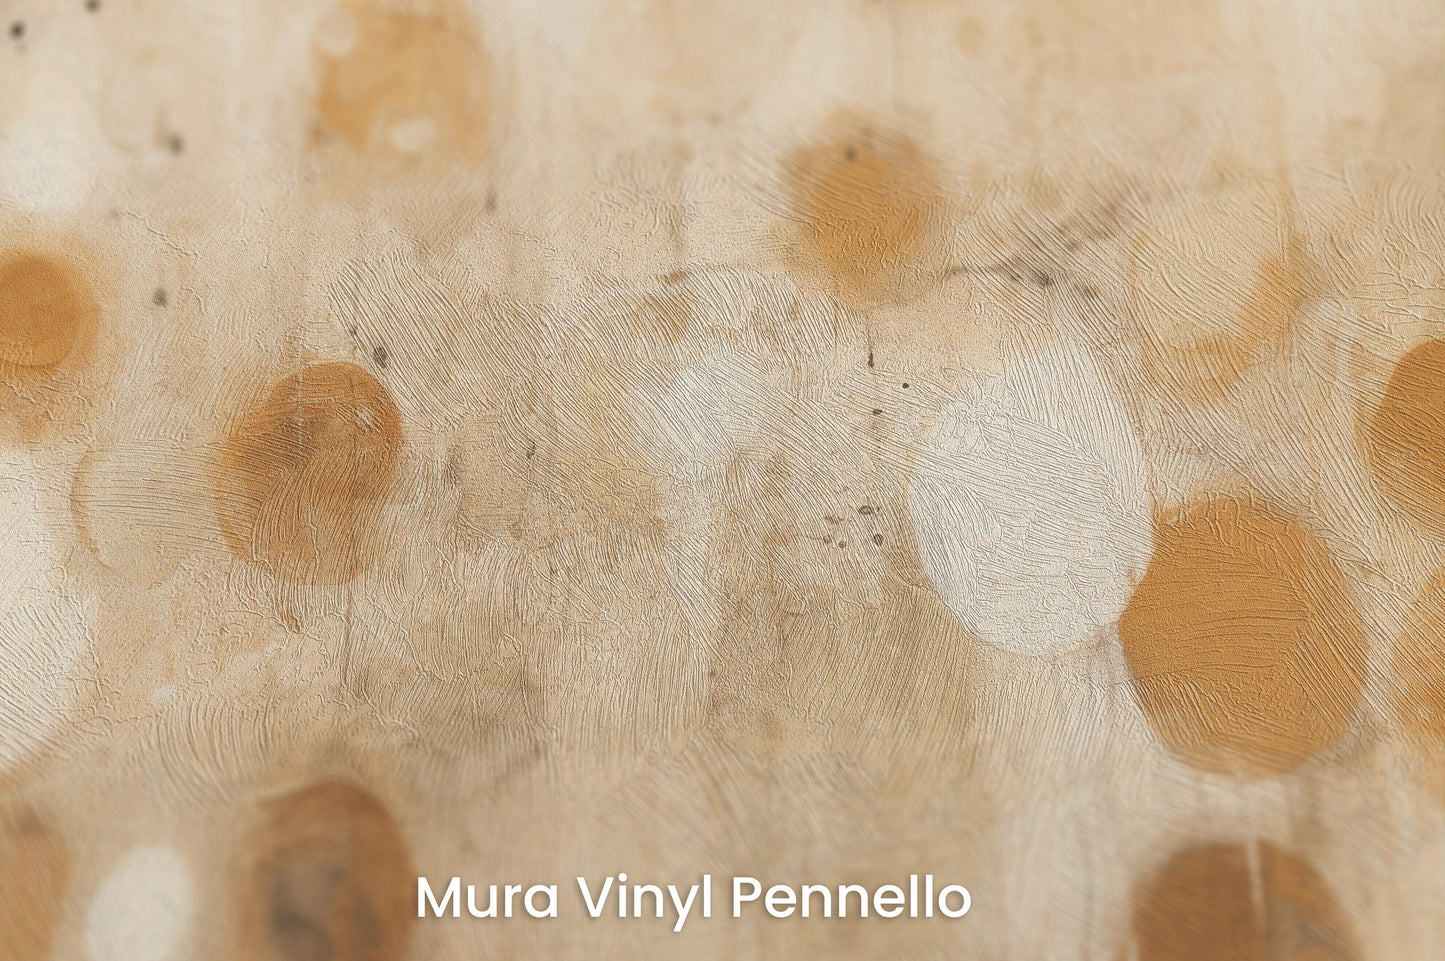 Zbliżenie na artystyczną fototapetę o nazwie AMBIENT ORBITAL ARRAY na podłożu Mura Vinyl Pennello - faktura pociągnięć pędzla malarskiego.